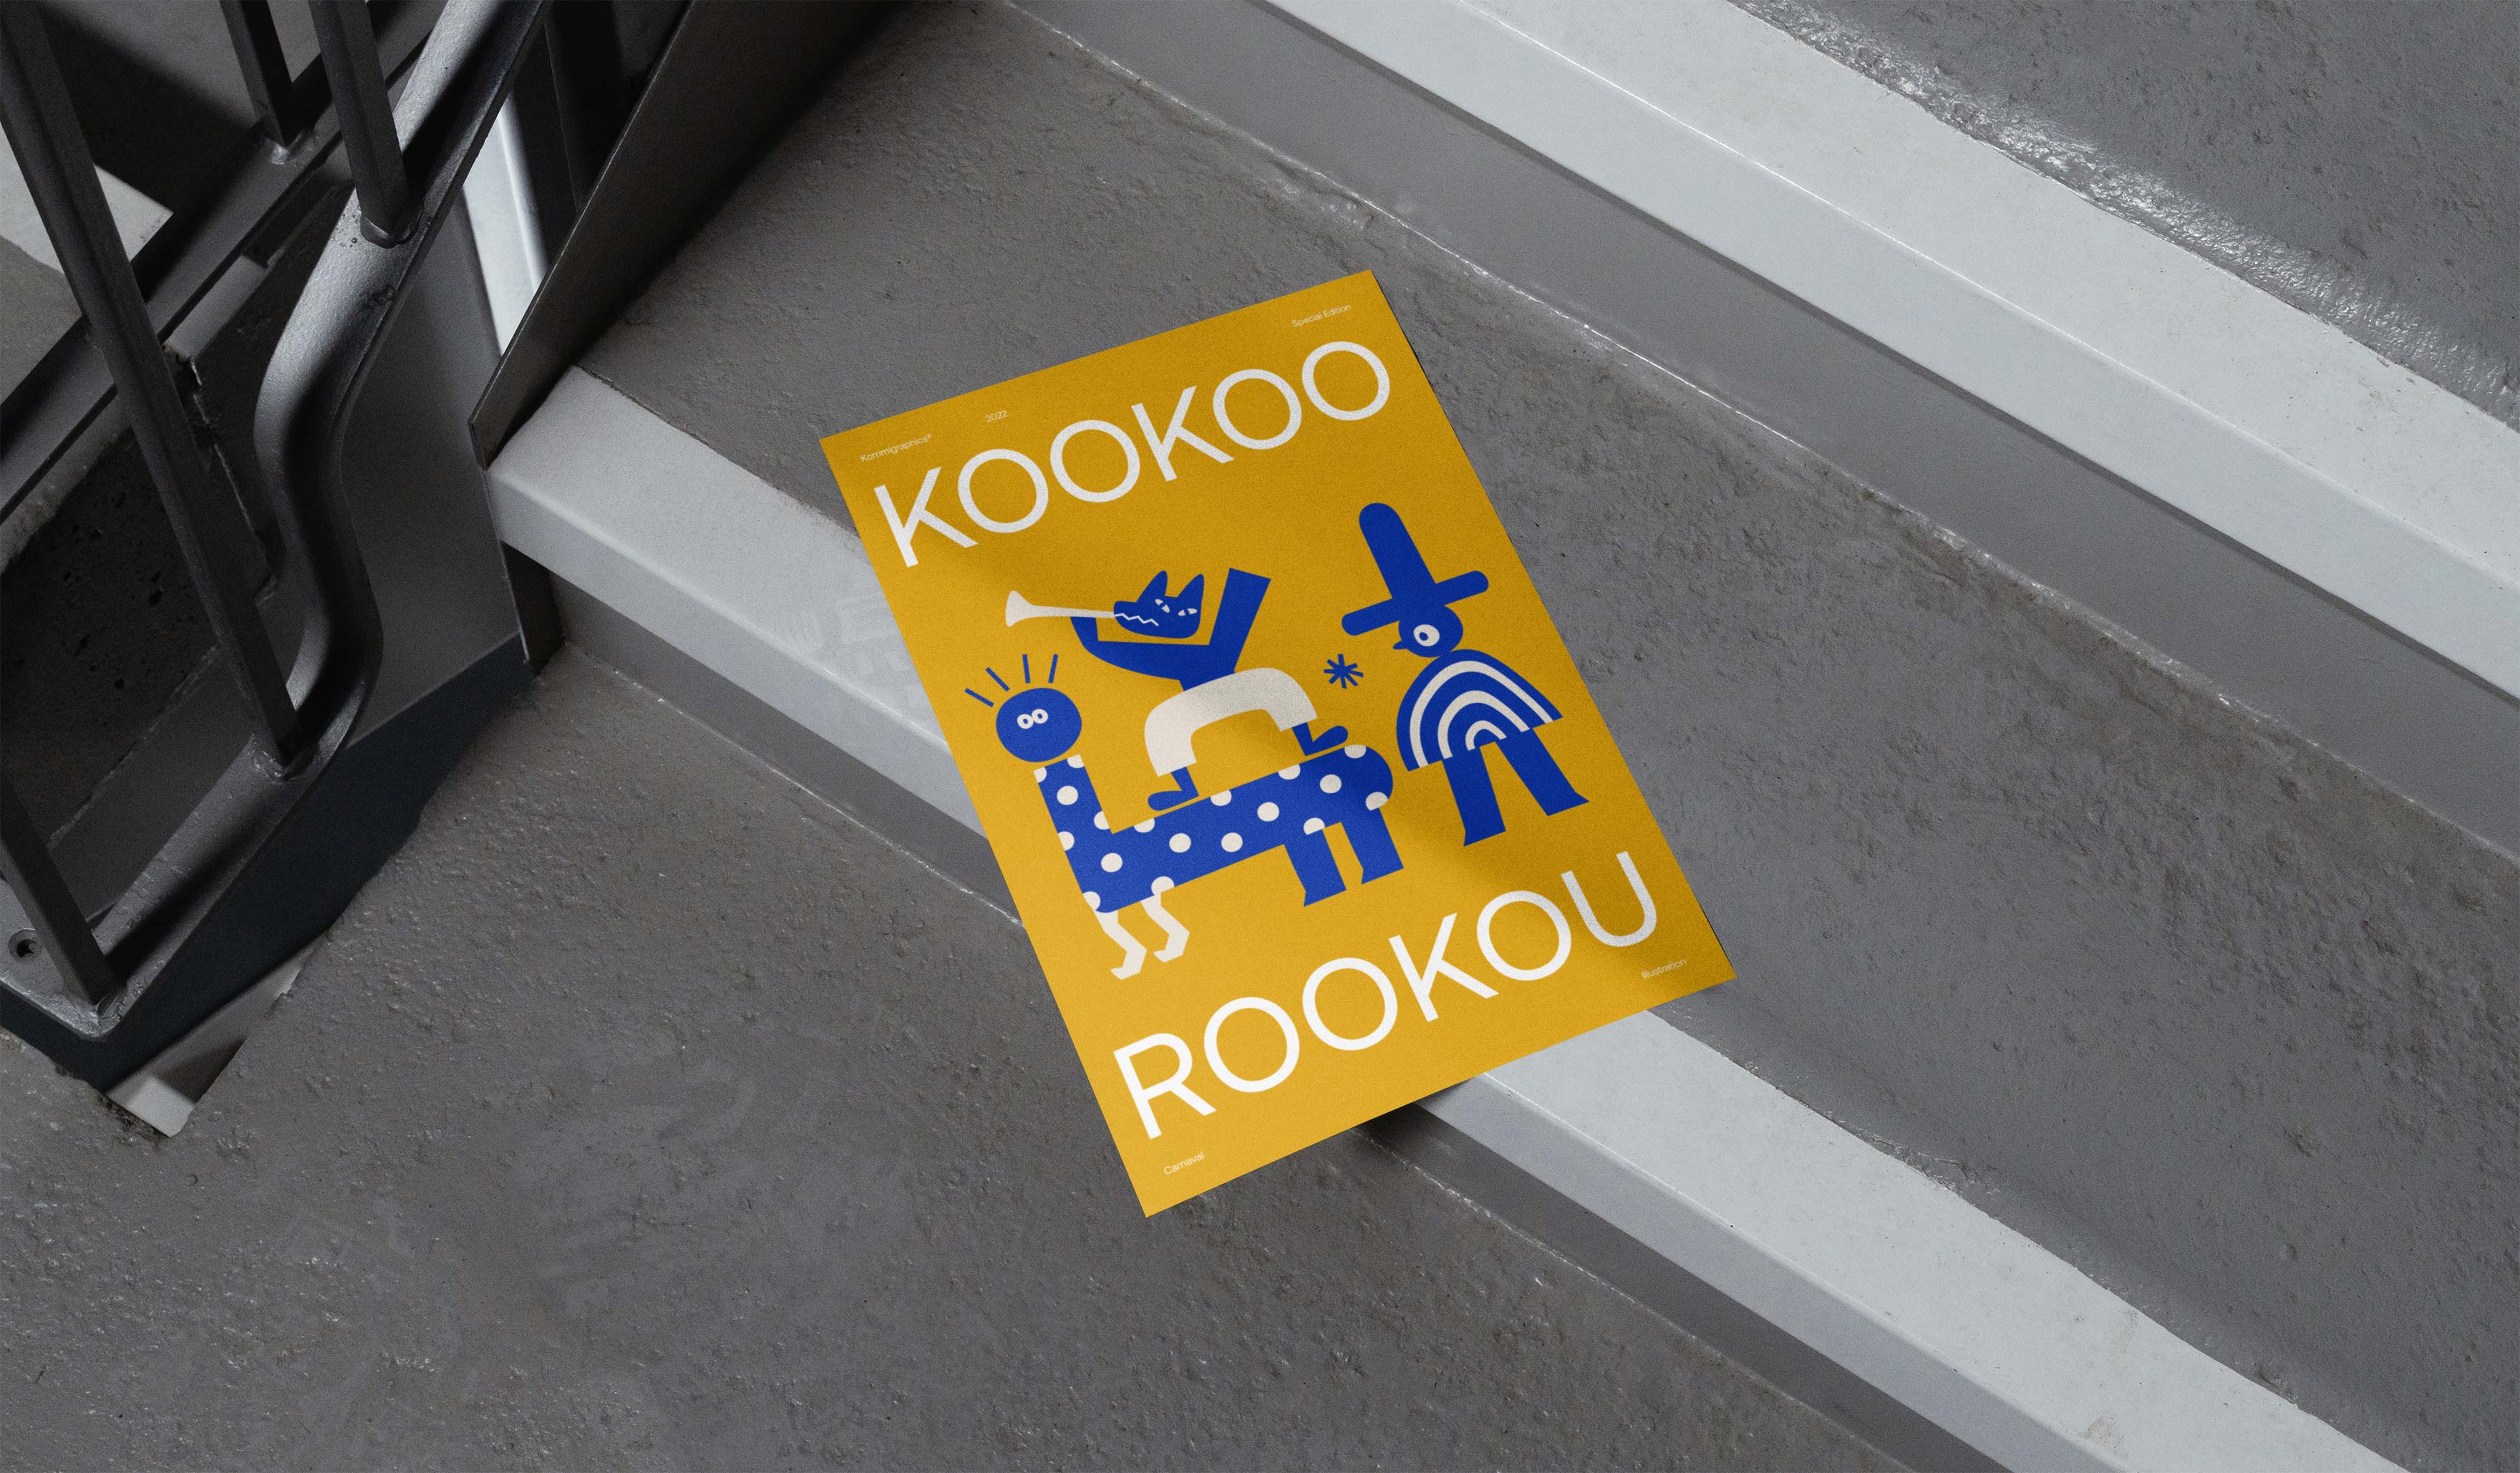 kookoorookou branding poster kommigraphics